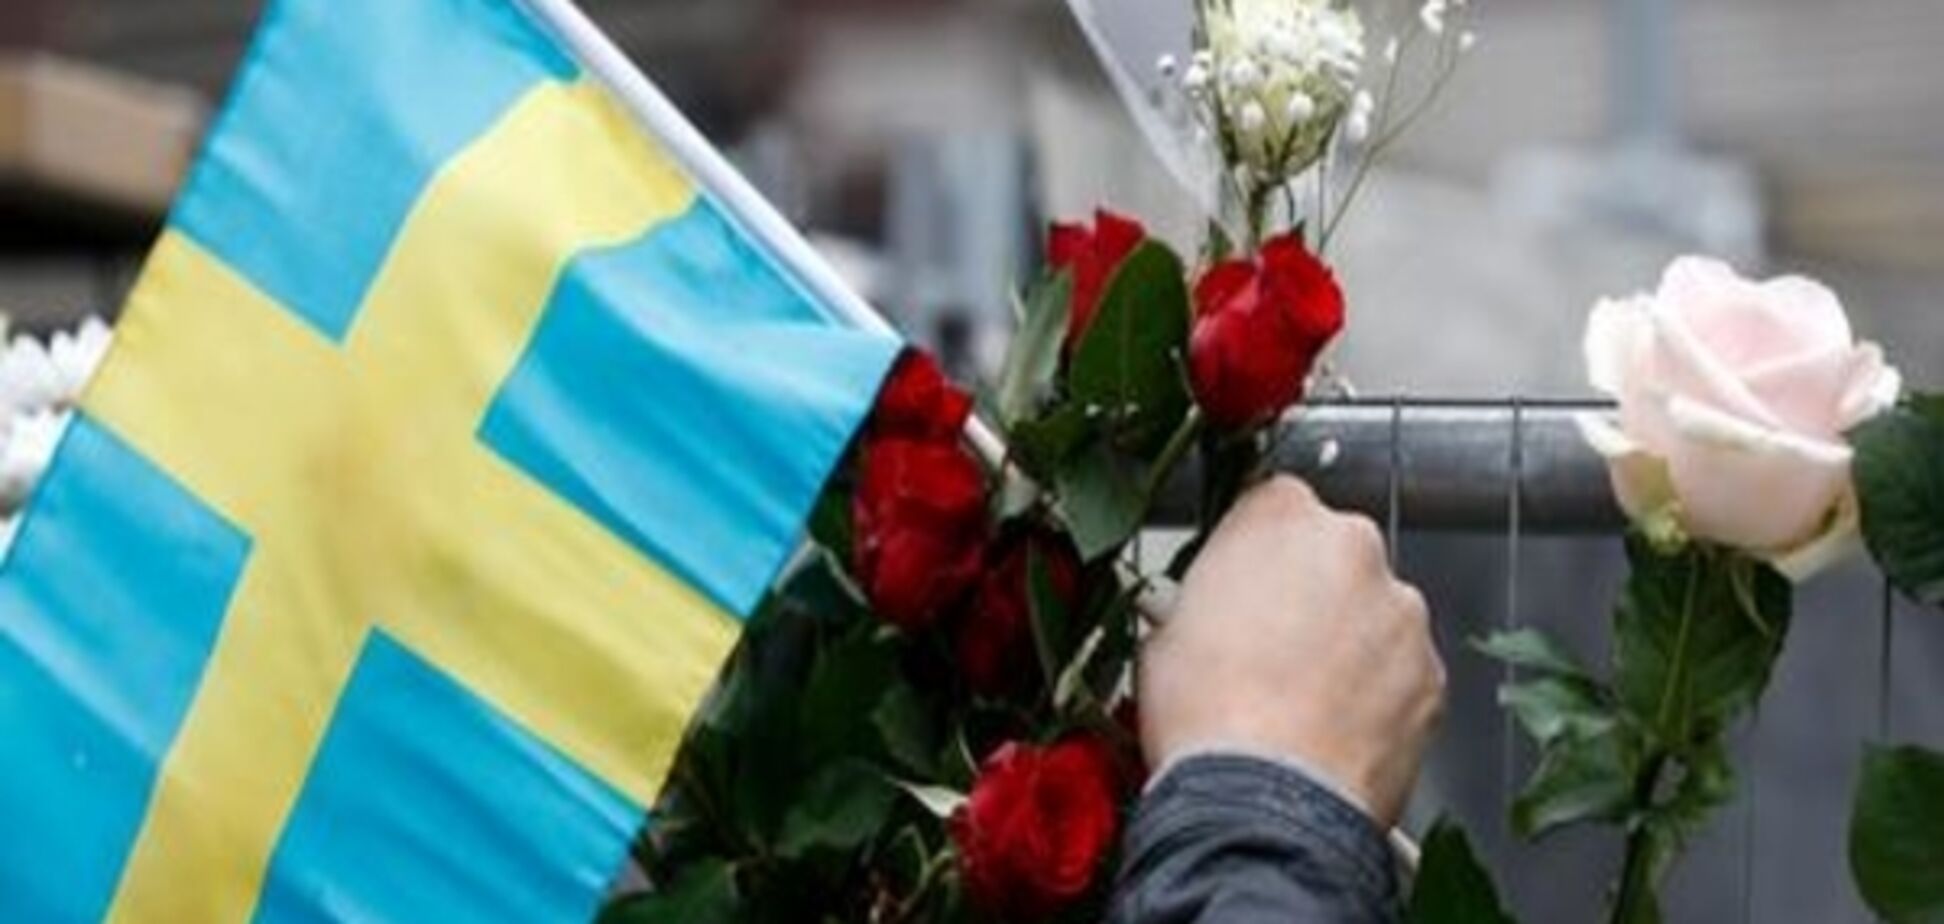 Напад у Стокгольмі: заарештований підозрюваний походить з Узбекистану